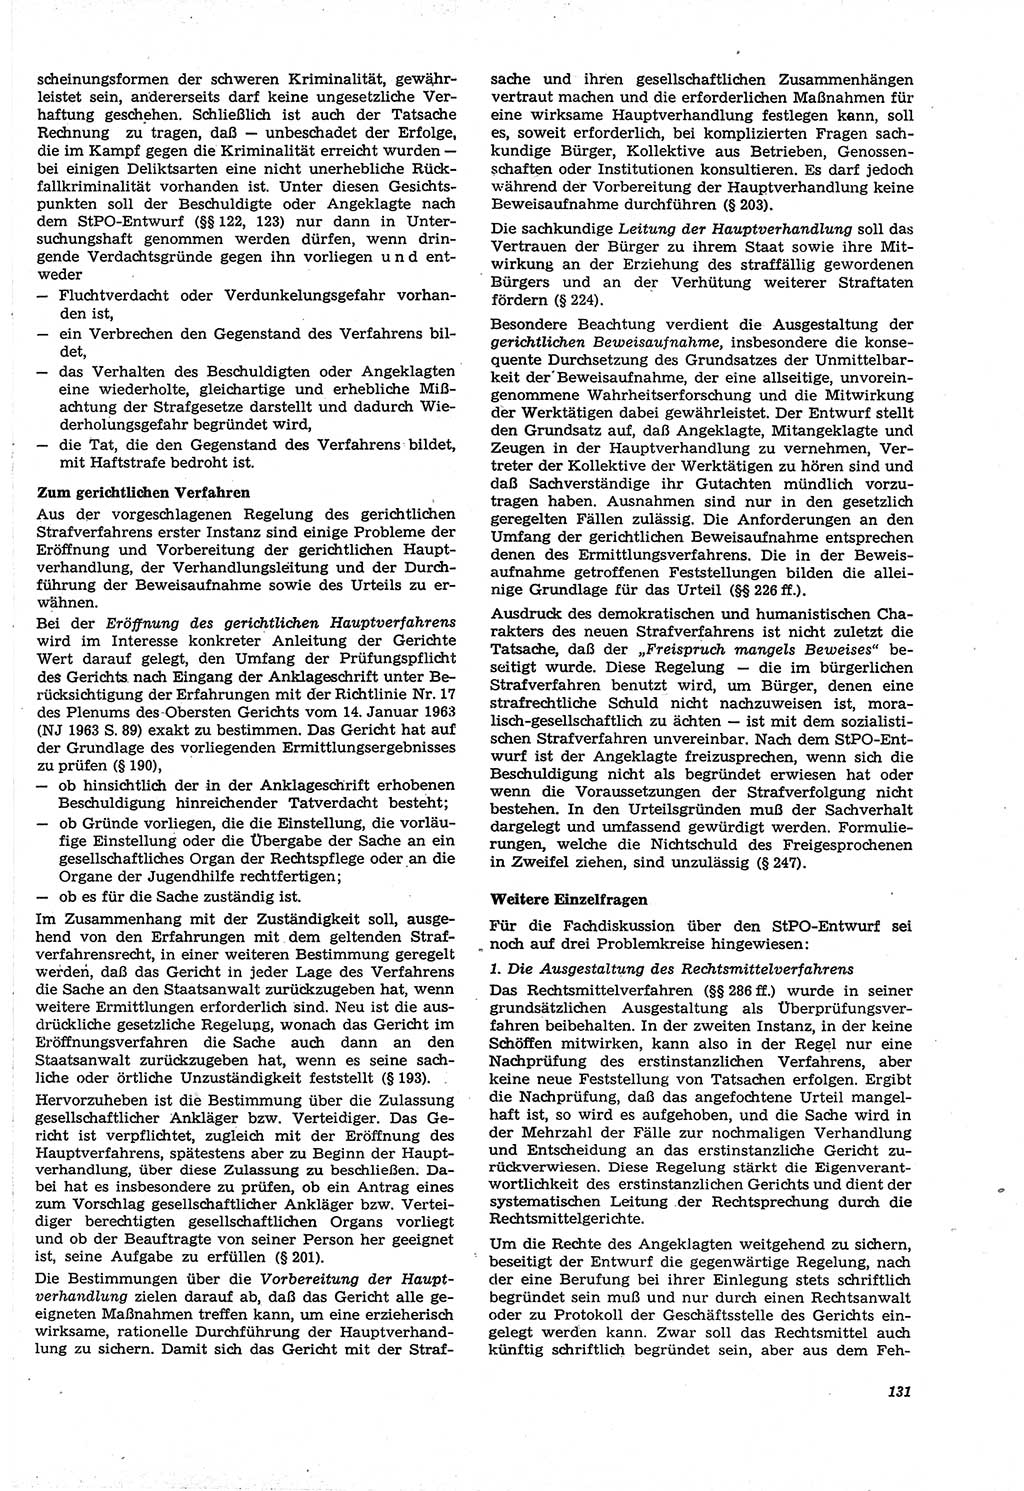 Neue Justiz (NJ), Zeitschrift für Recht und Rechtswissenschaft [Deutsche Demokratische Republik (DDR)], 21. Jahrgang 1967, Seite 131 (NJ DDR 1967, S. 131)